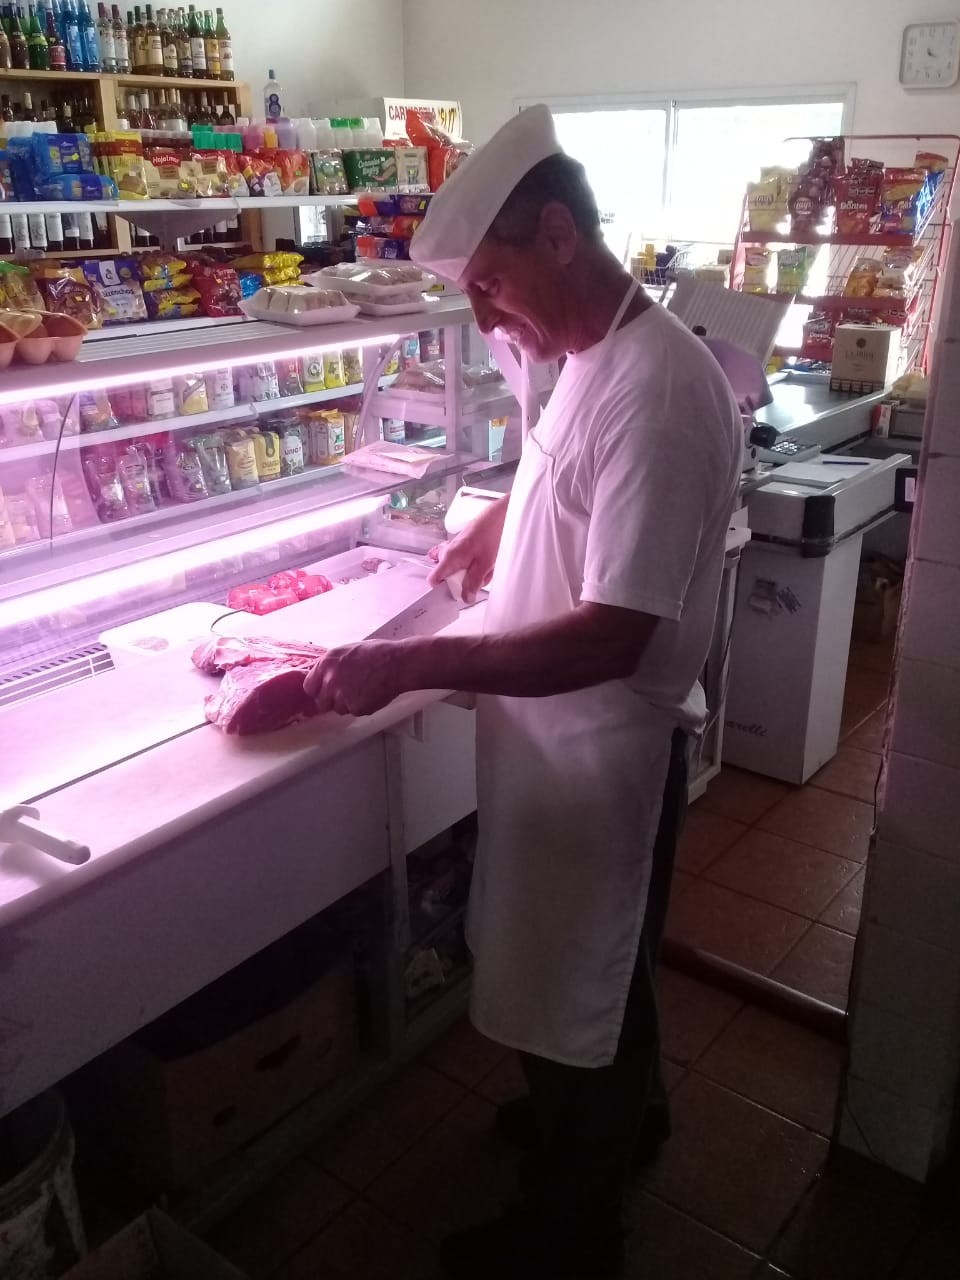 Carnicería y Minimercado El 17 de Héctor Serra cumplió 29 años de vida comercial, y en Radio Urdampilleta hablamos en el día de referencia, contando la historia de su comercio